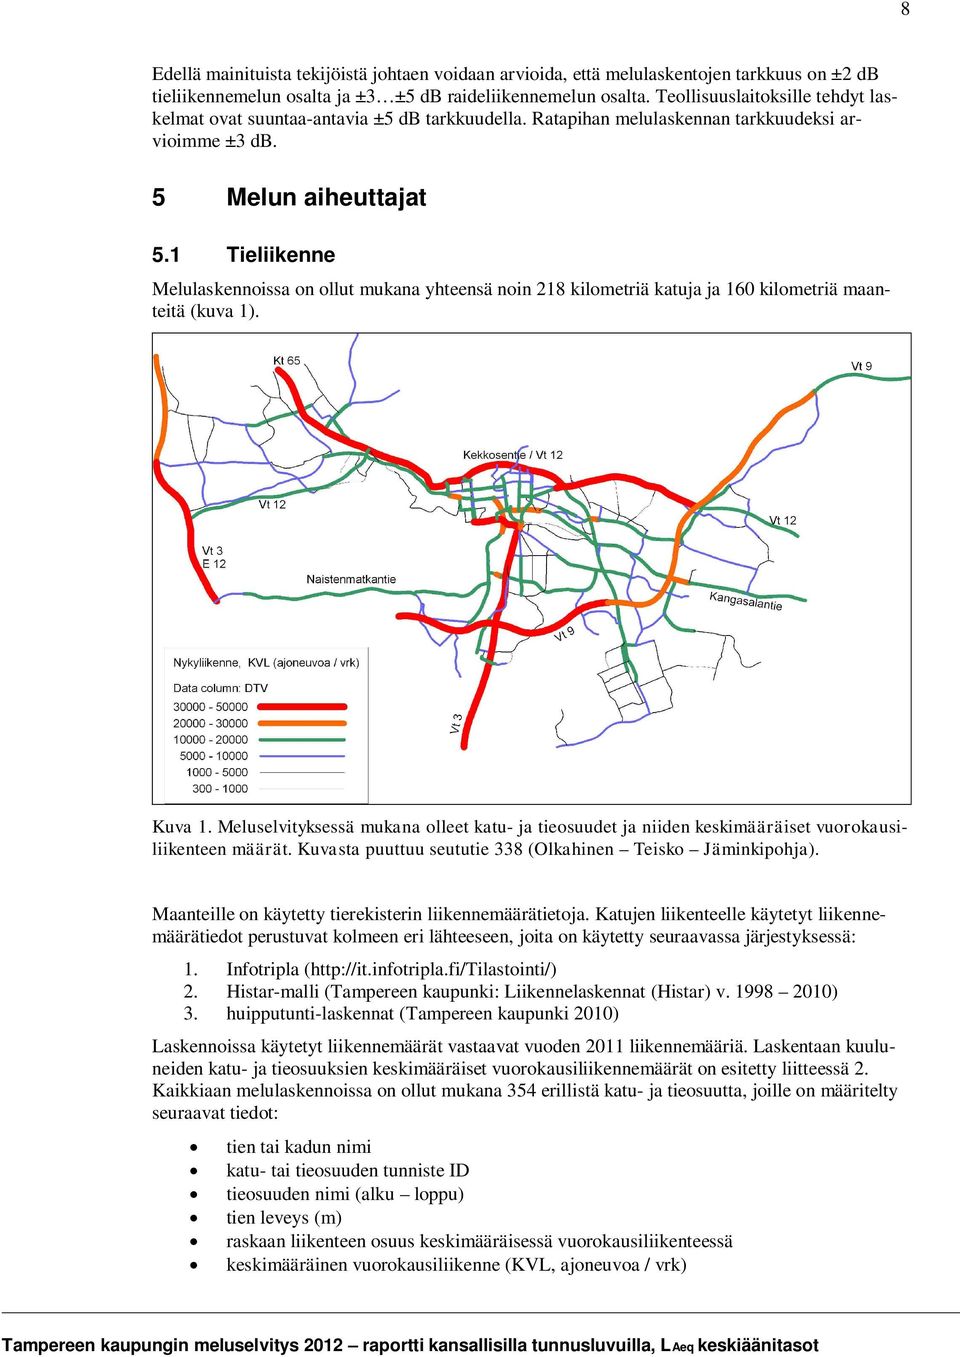 1 Tieliikenne Melulaskennoissa on ollut mukana yhteensä noin 218 kilometriä katuja ja 160 kilometriä maanteitä (kuva 1). Kuva 1.